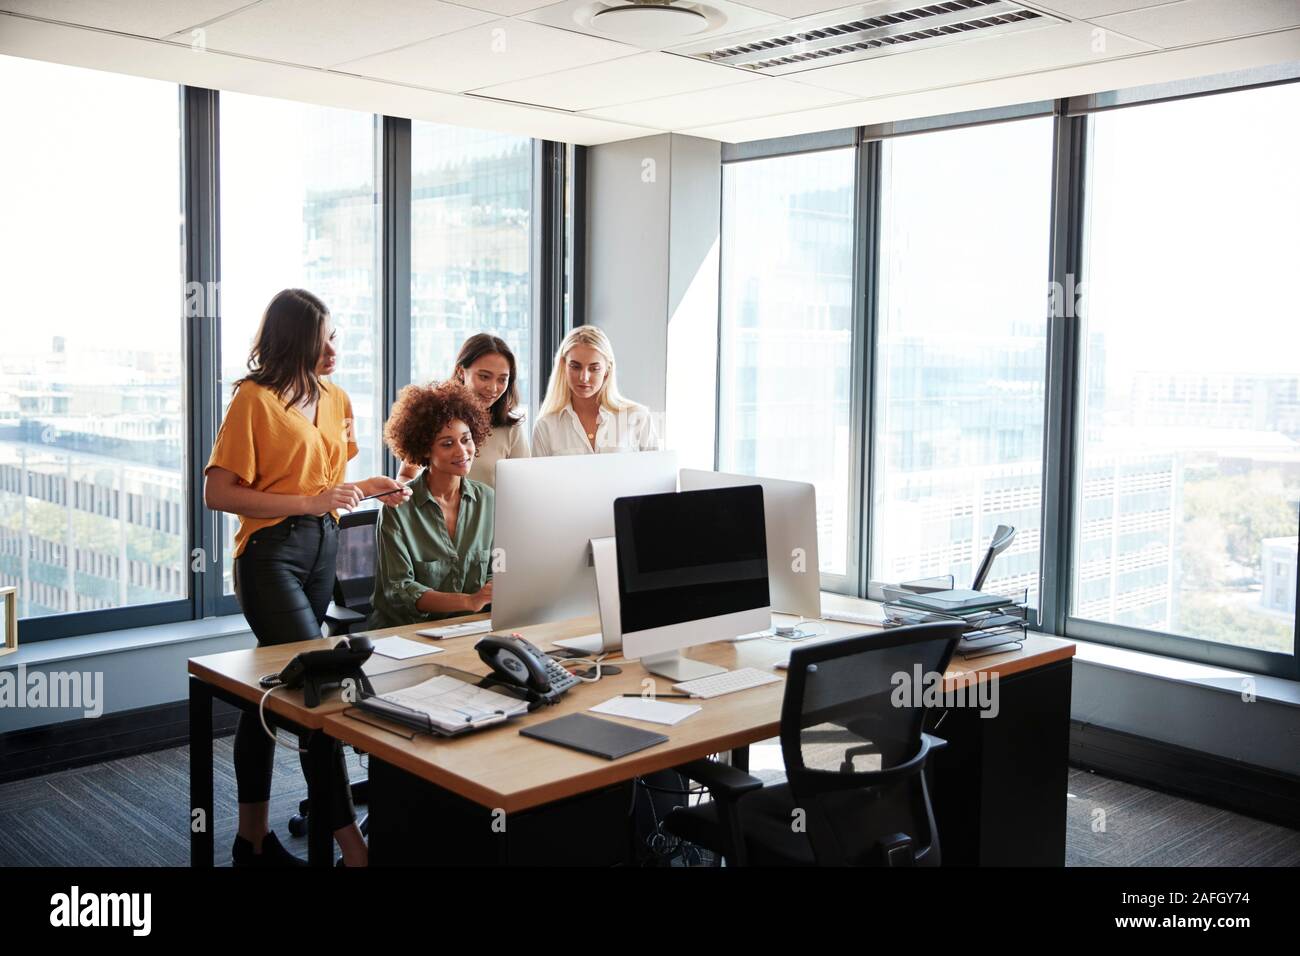 Quatre femmes créatifs travaillant autour de l'écran d'un ordinateur dans un bureau, vue pleine longueur Banque D'Images